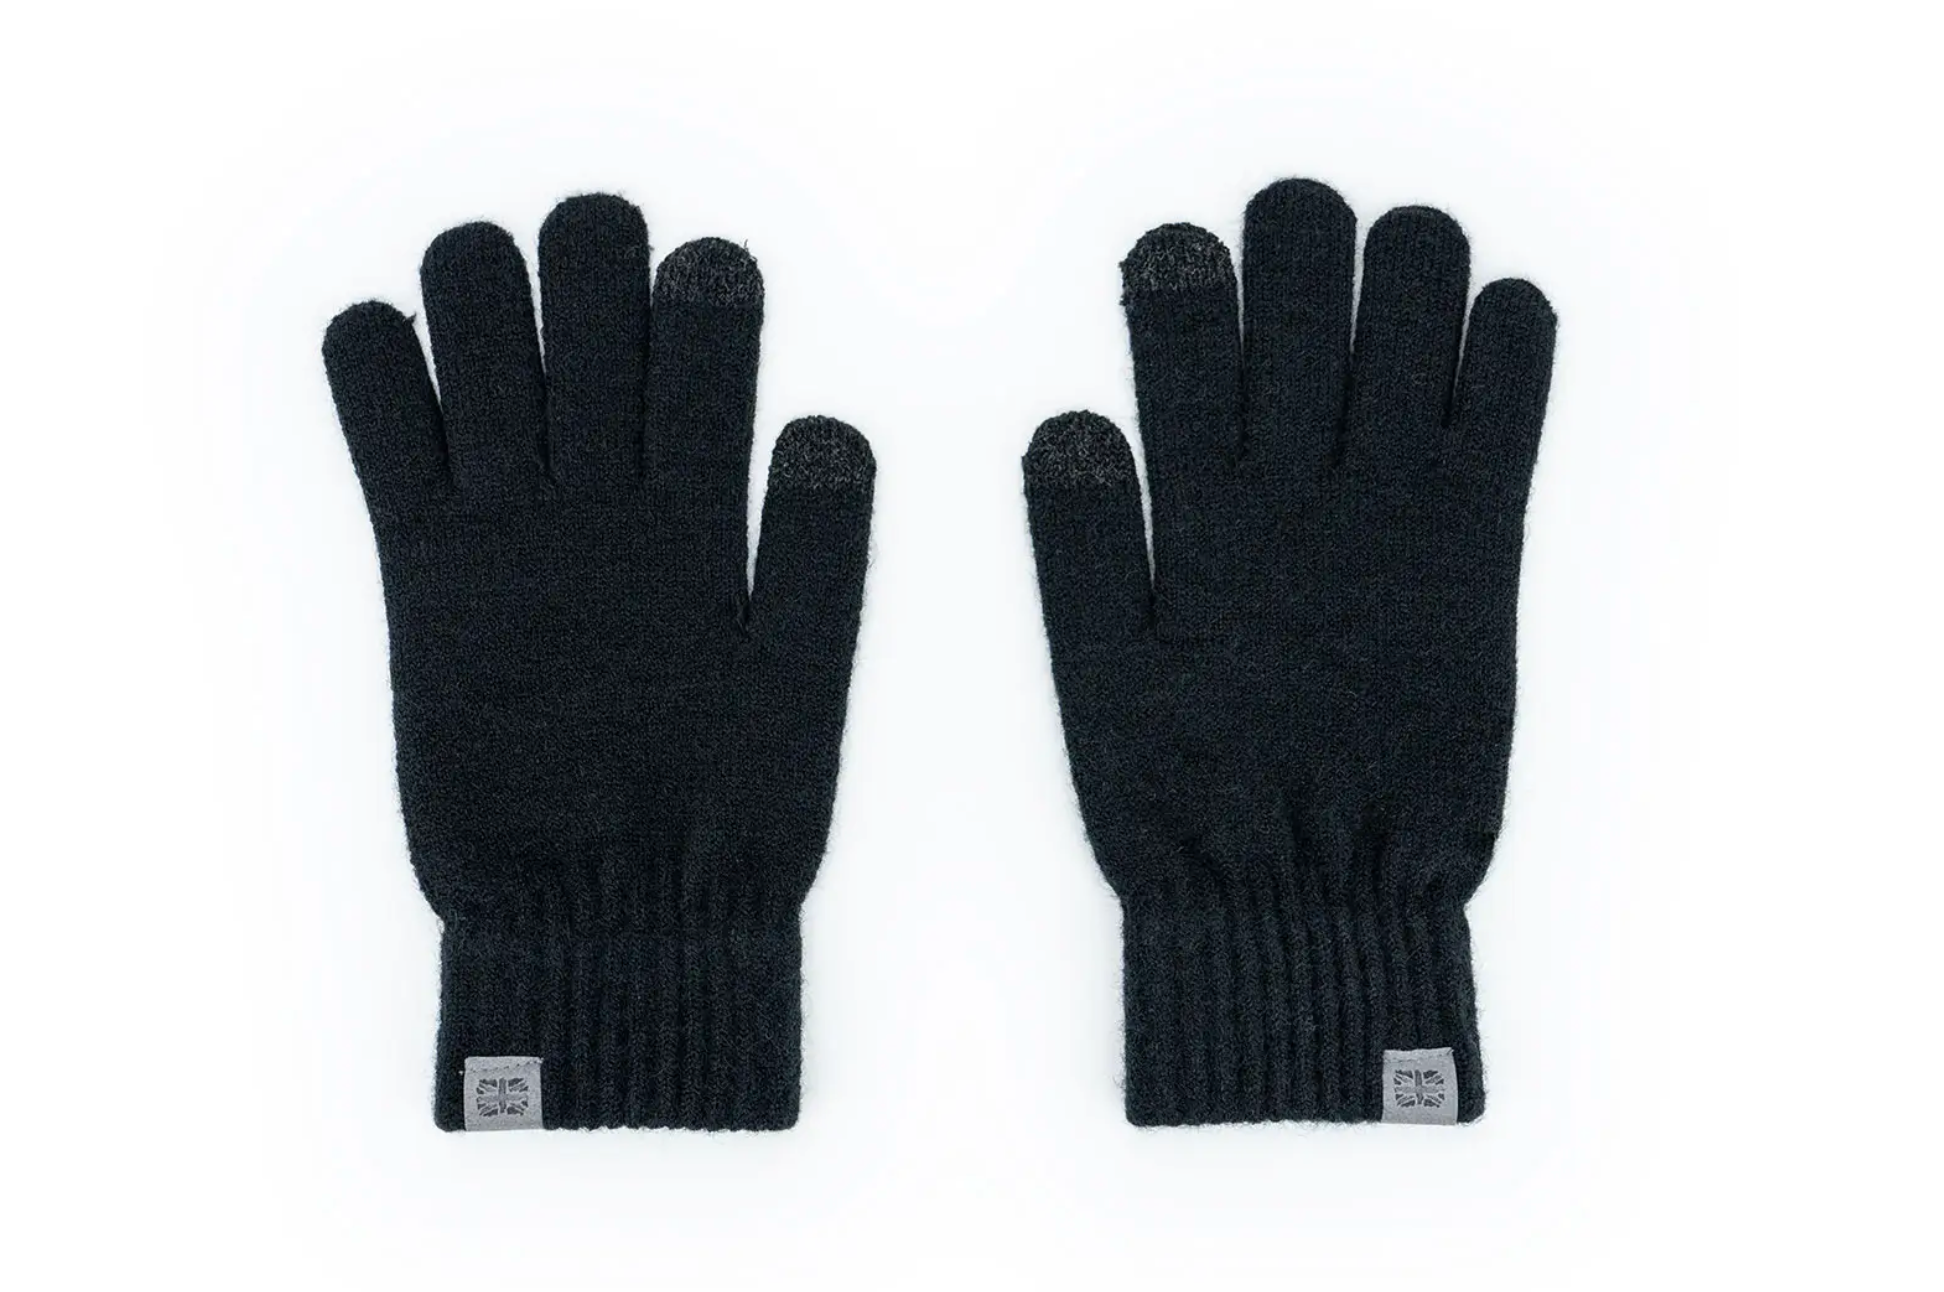 Britt's Knits Men’s Craftsman Gloves - Black